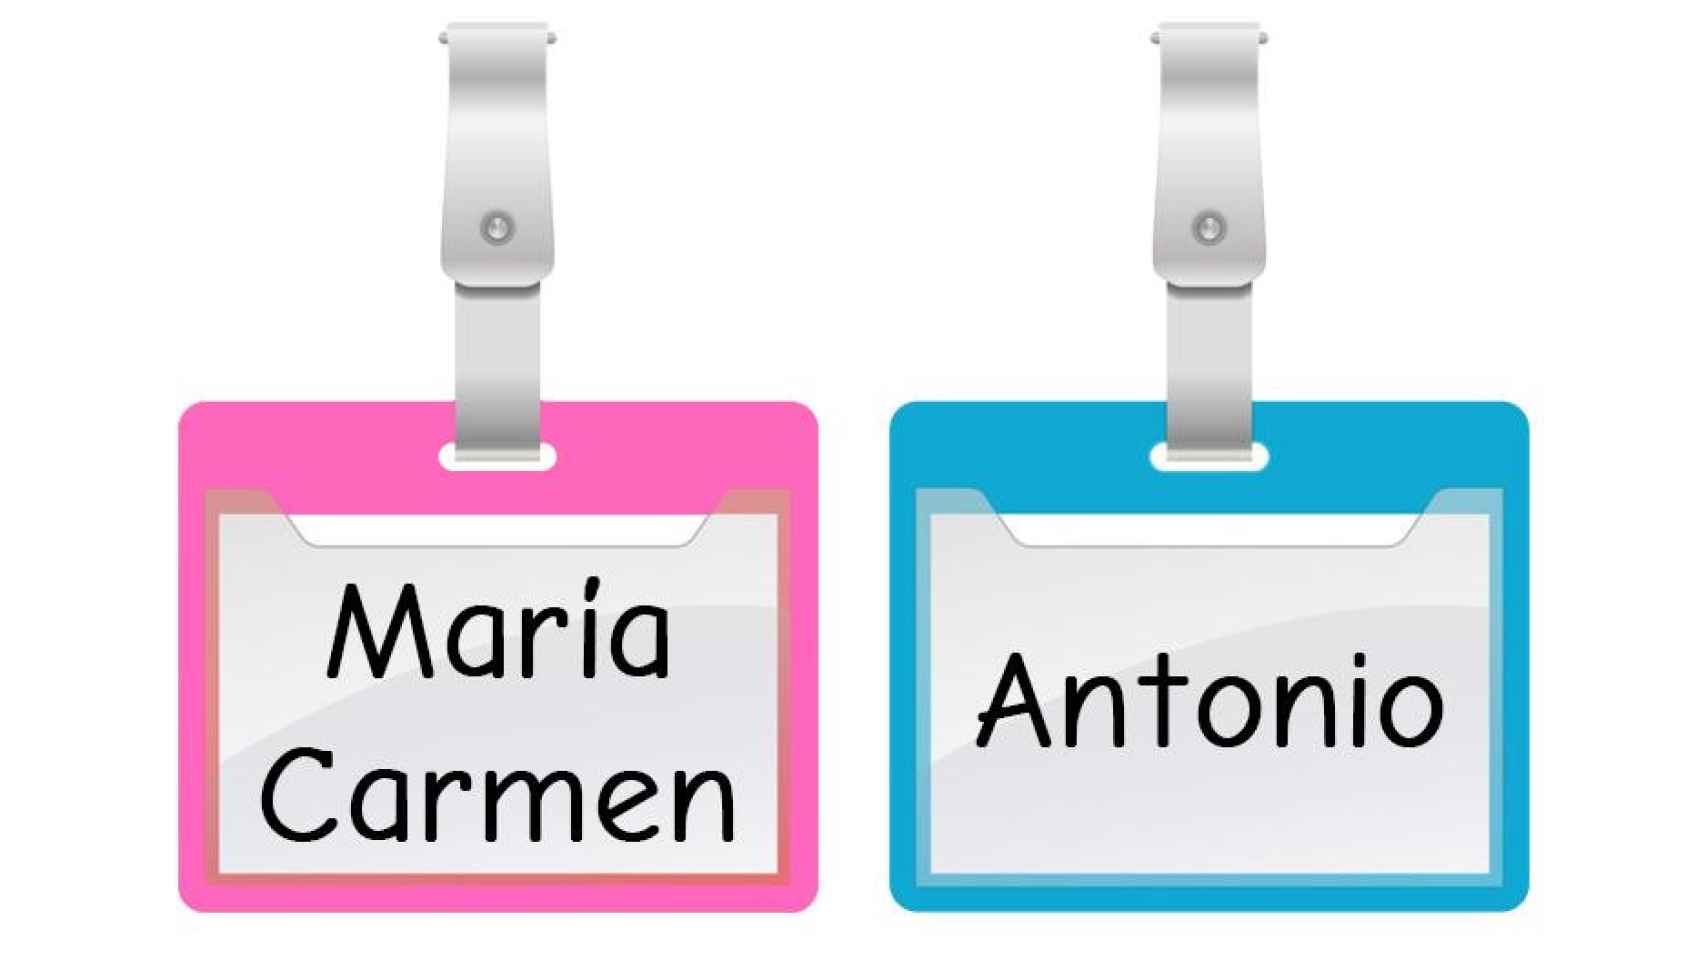 Placa identificadora de nombres de María Carmen y Antonio / PIXABAY